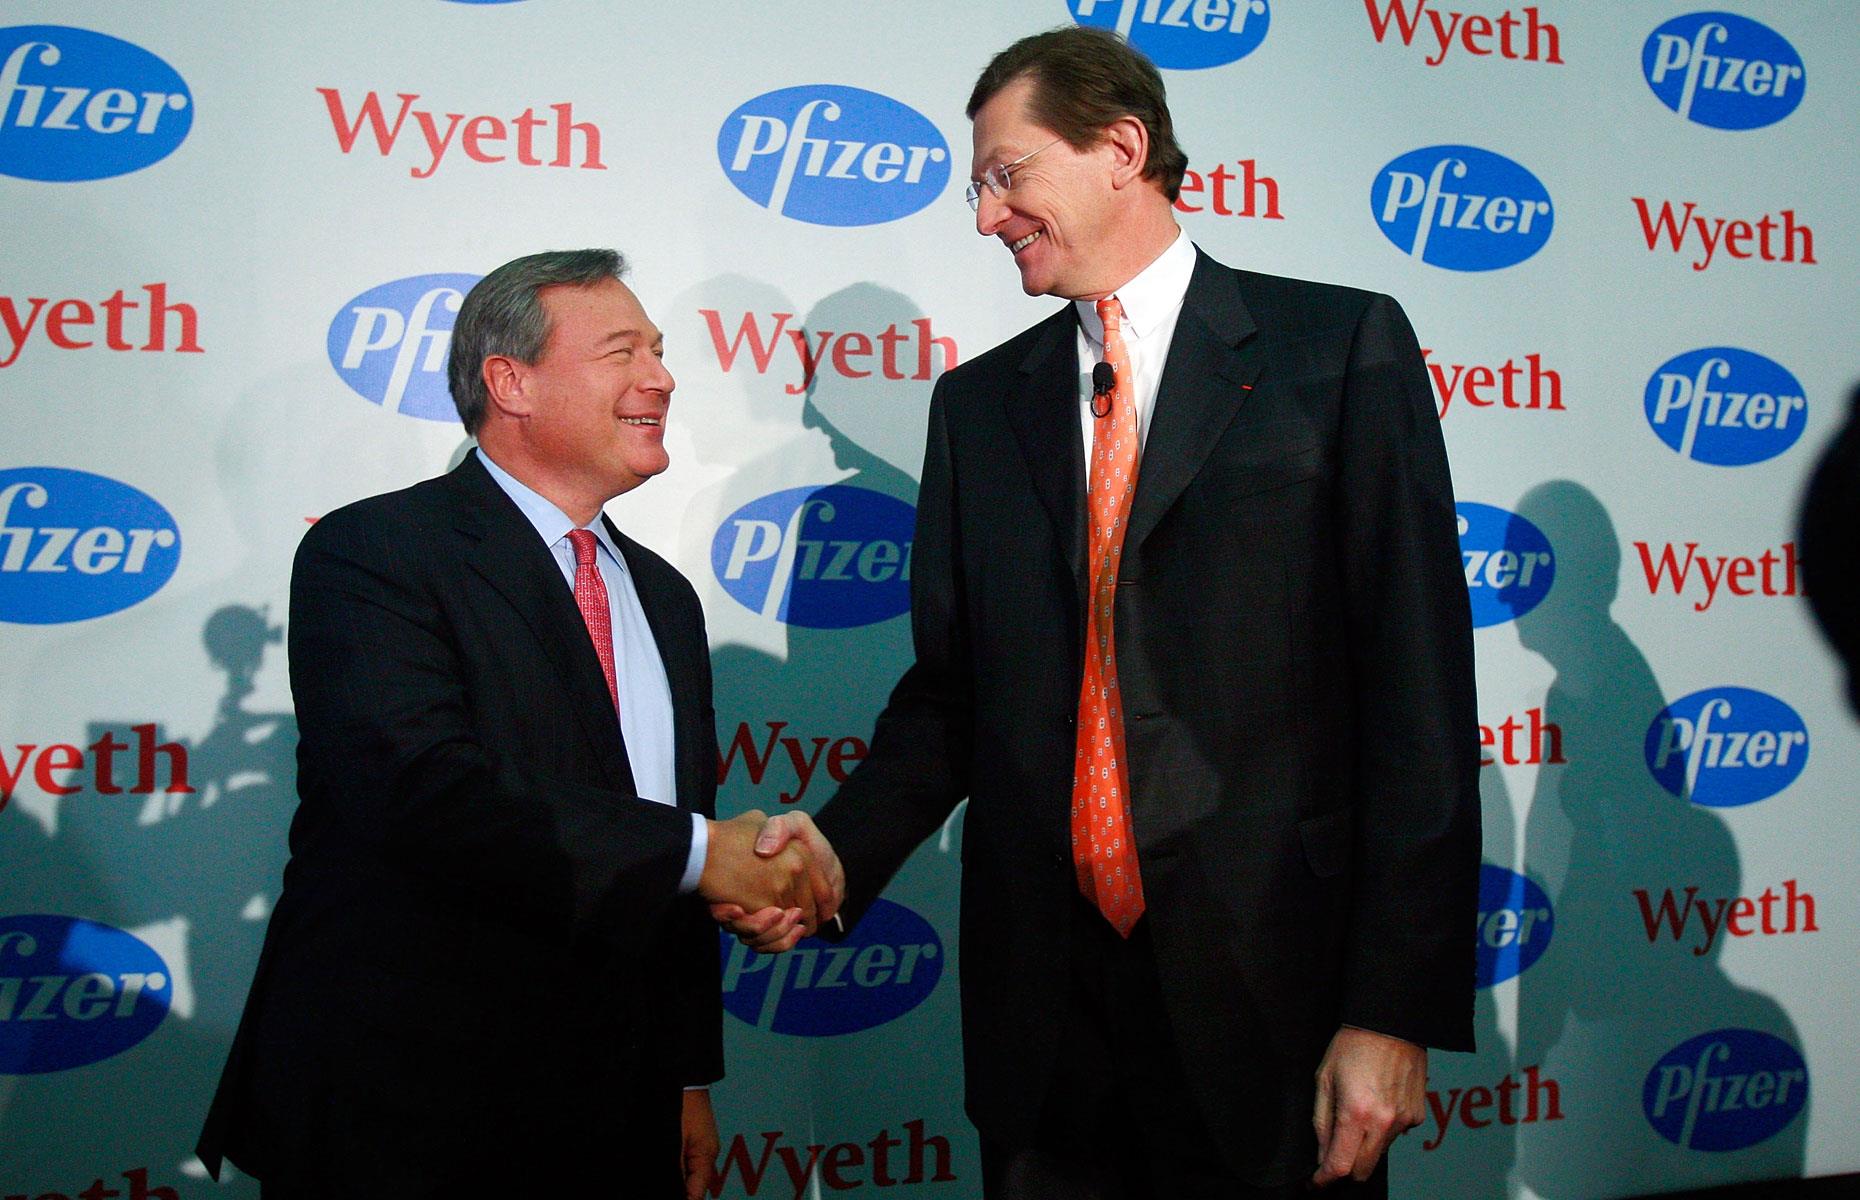 21. Pfizer & Wyeth in 2009: $79.41 billion (£59.50bn)